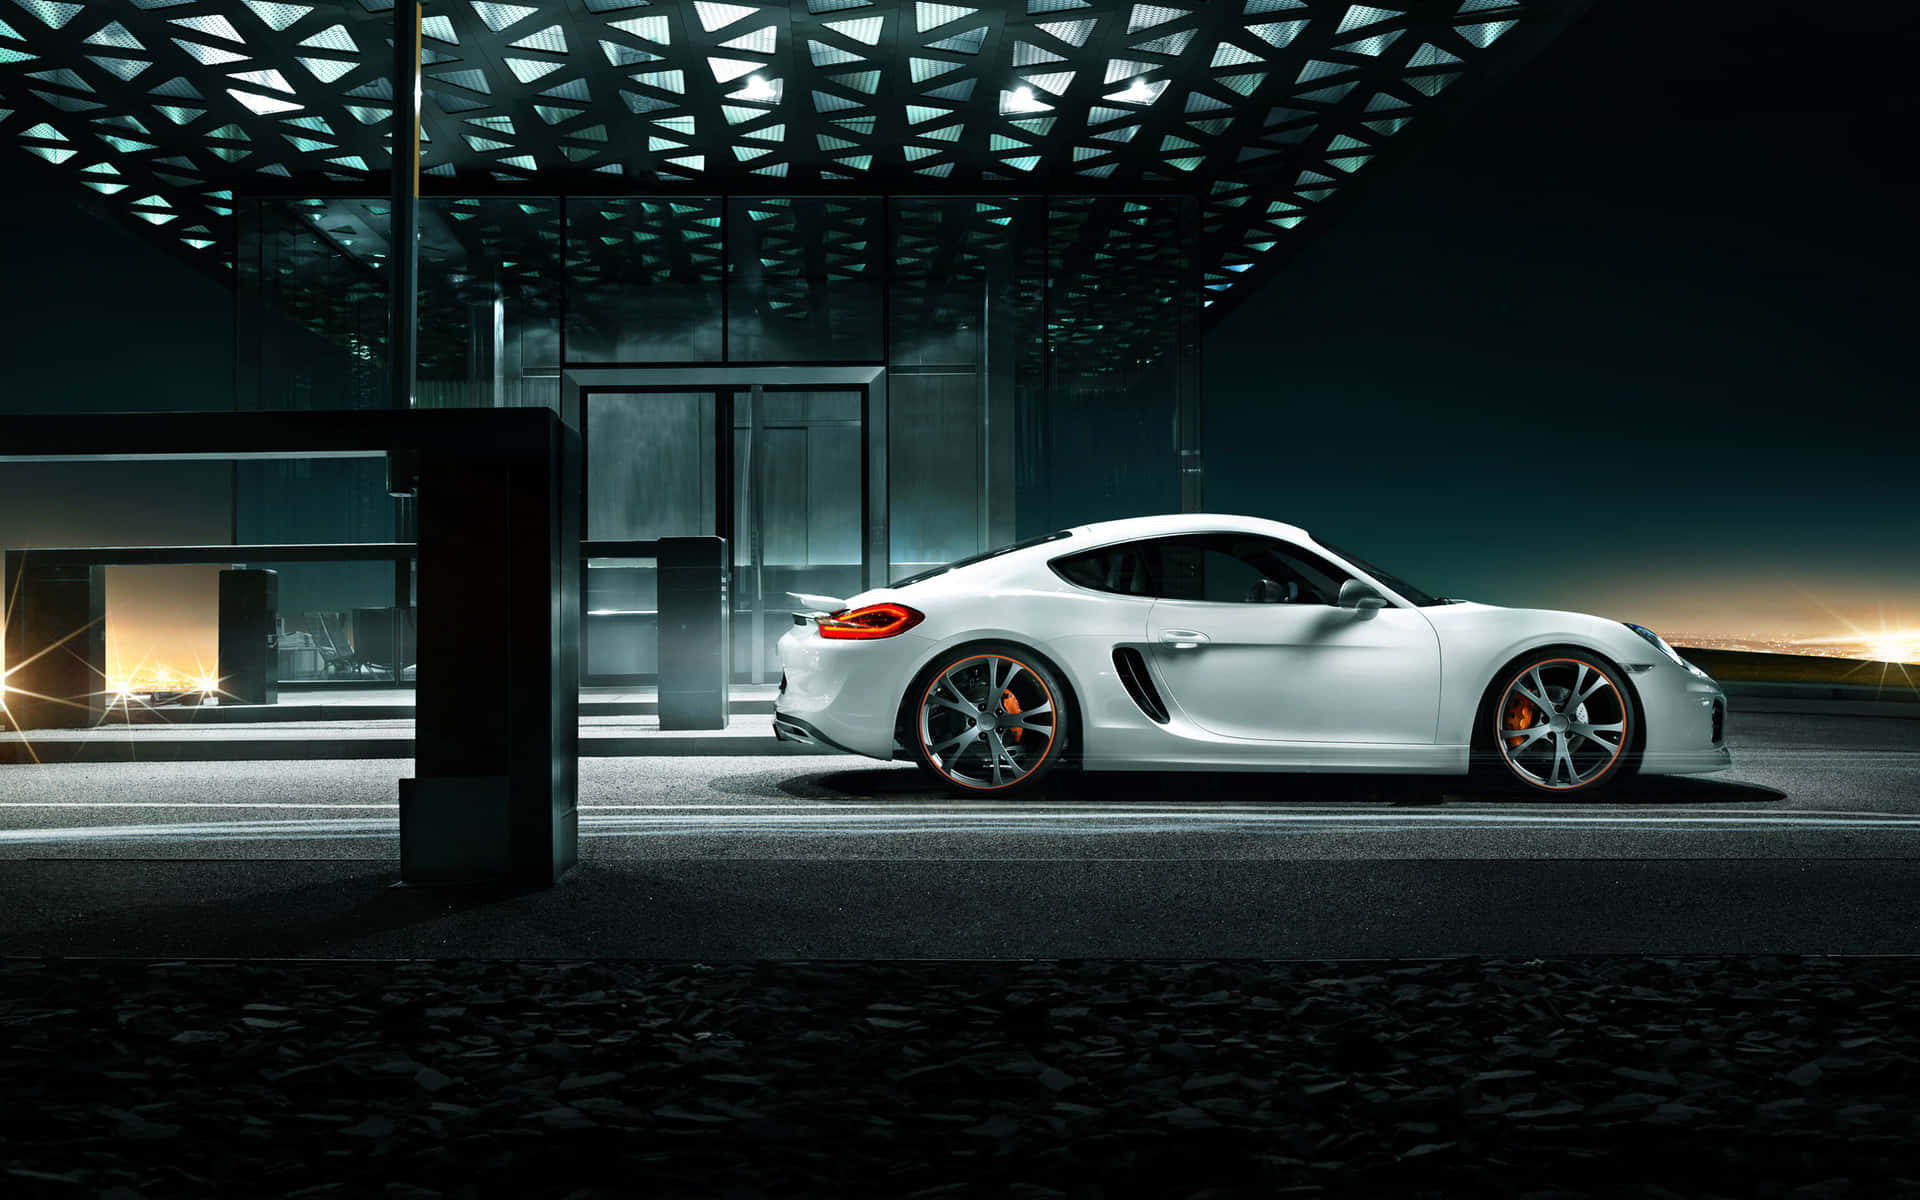 Unimpresionante Auto Deportivo Porsche Capturado En Movimiento En Una Pintoresca Carretera.